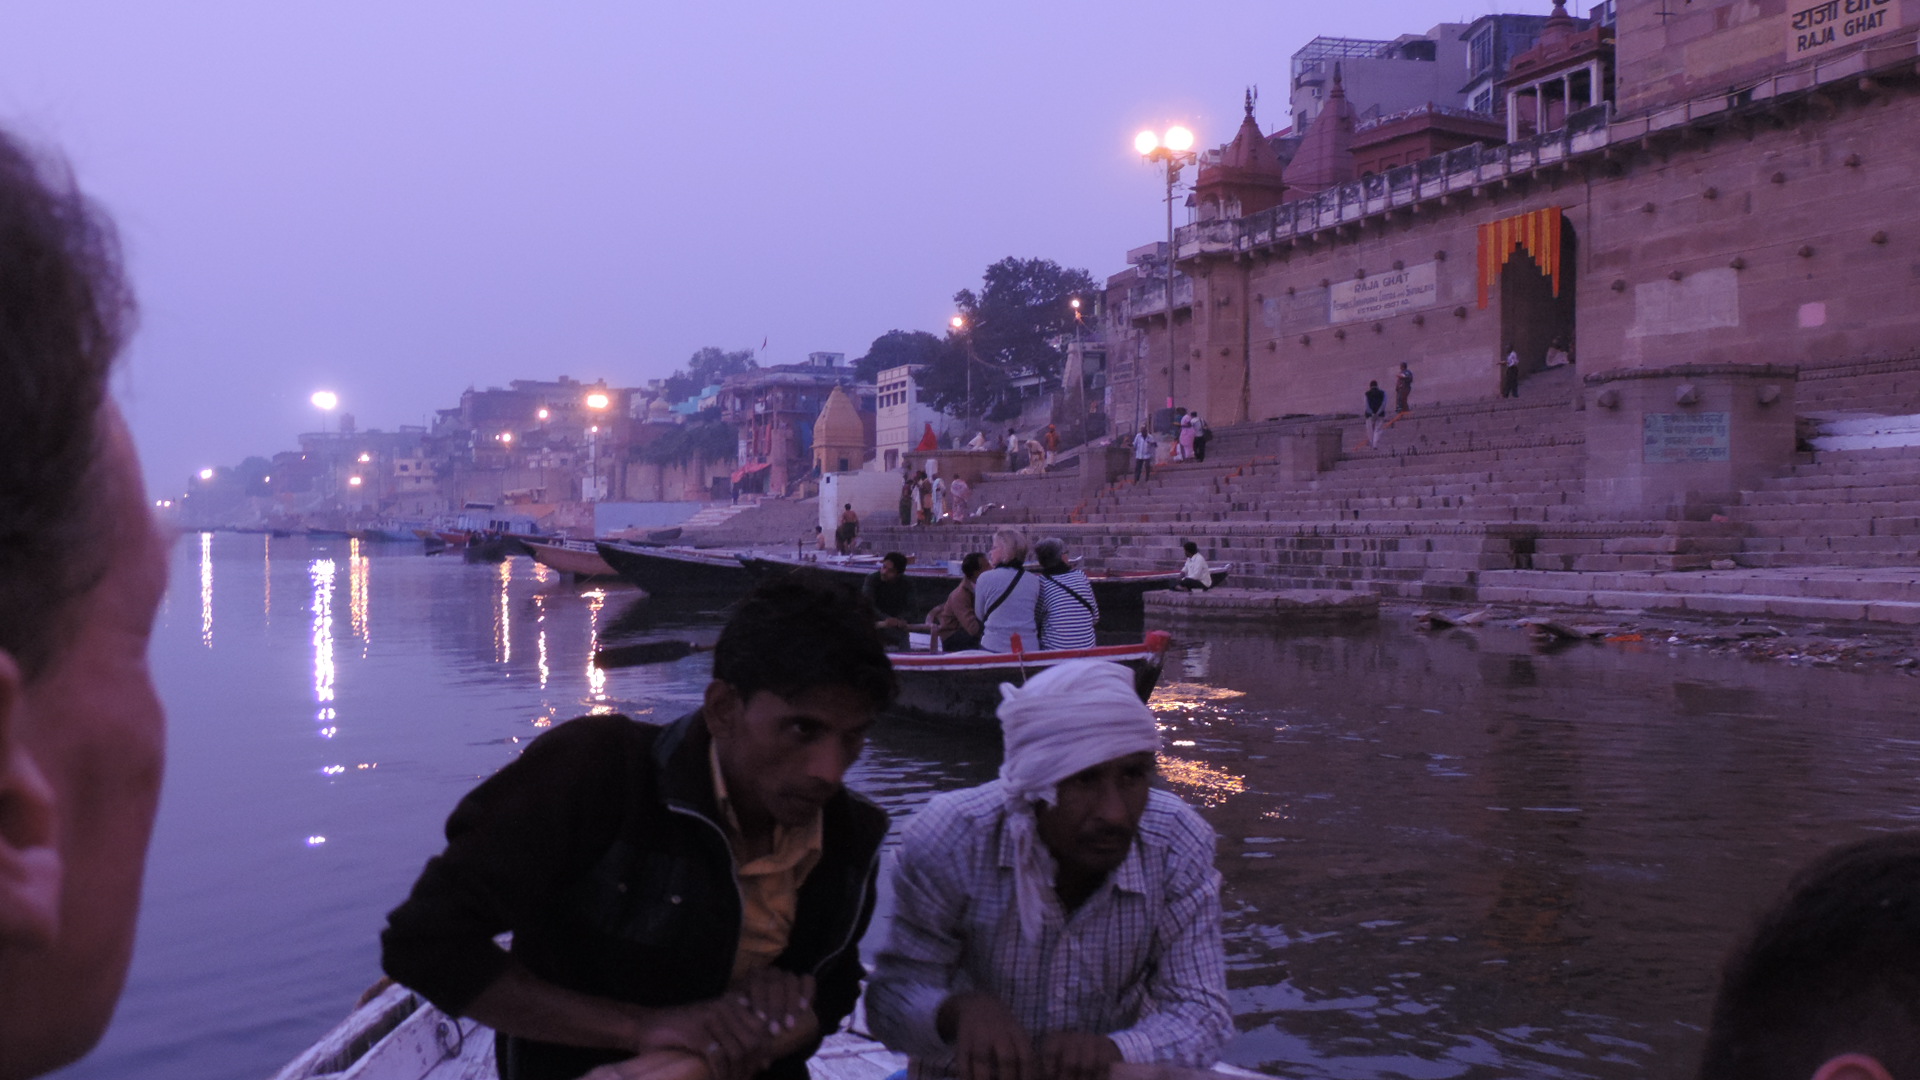 Ganges at dawn